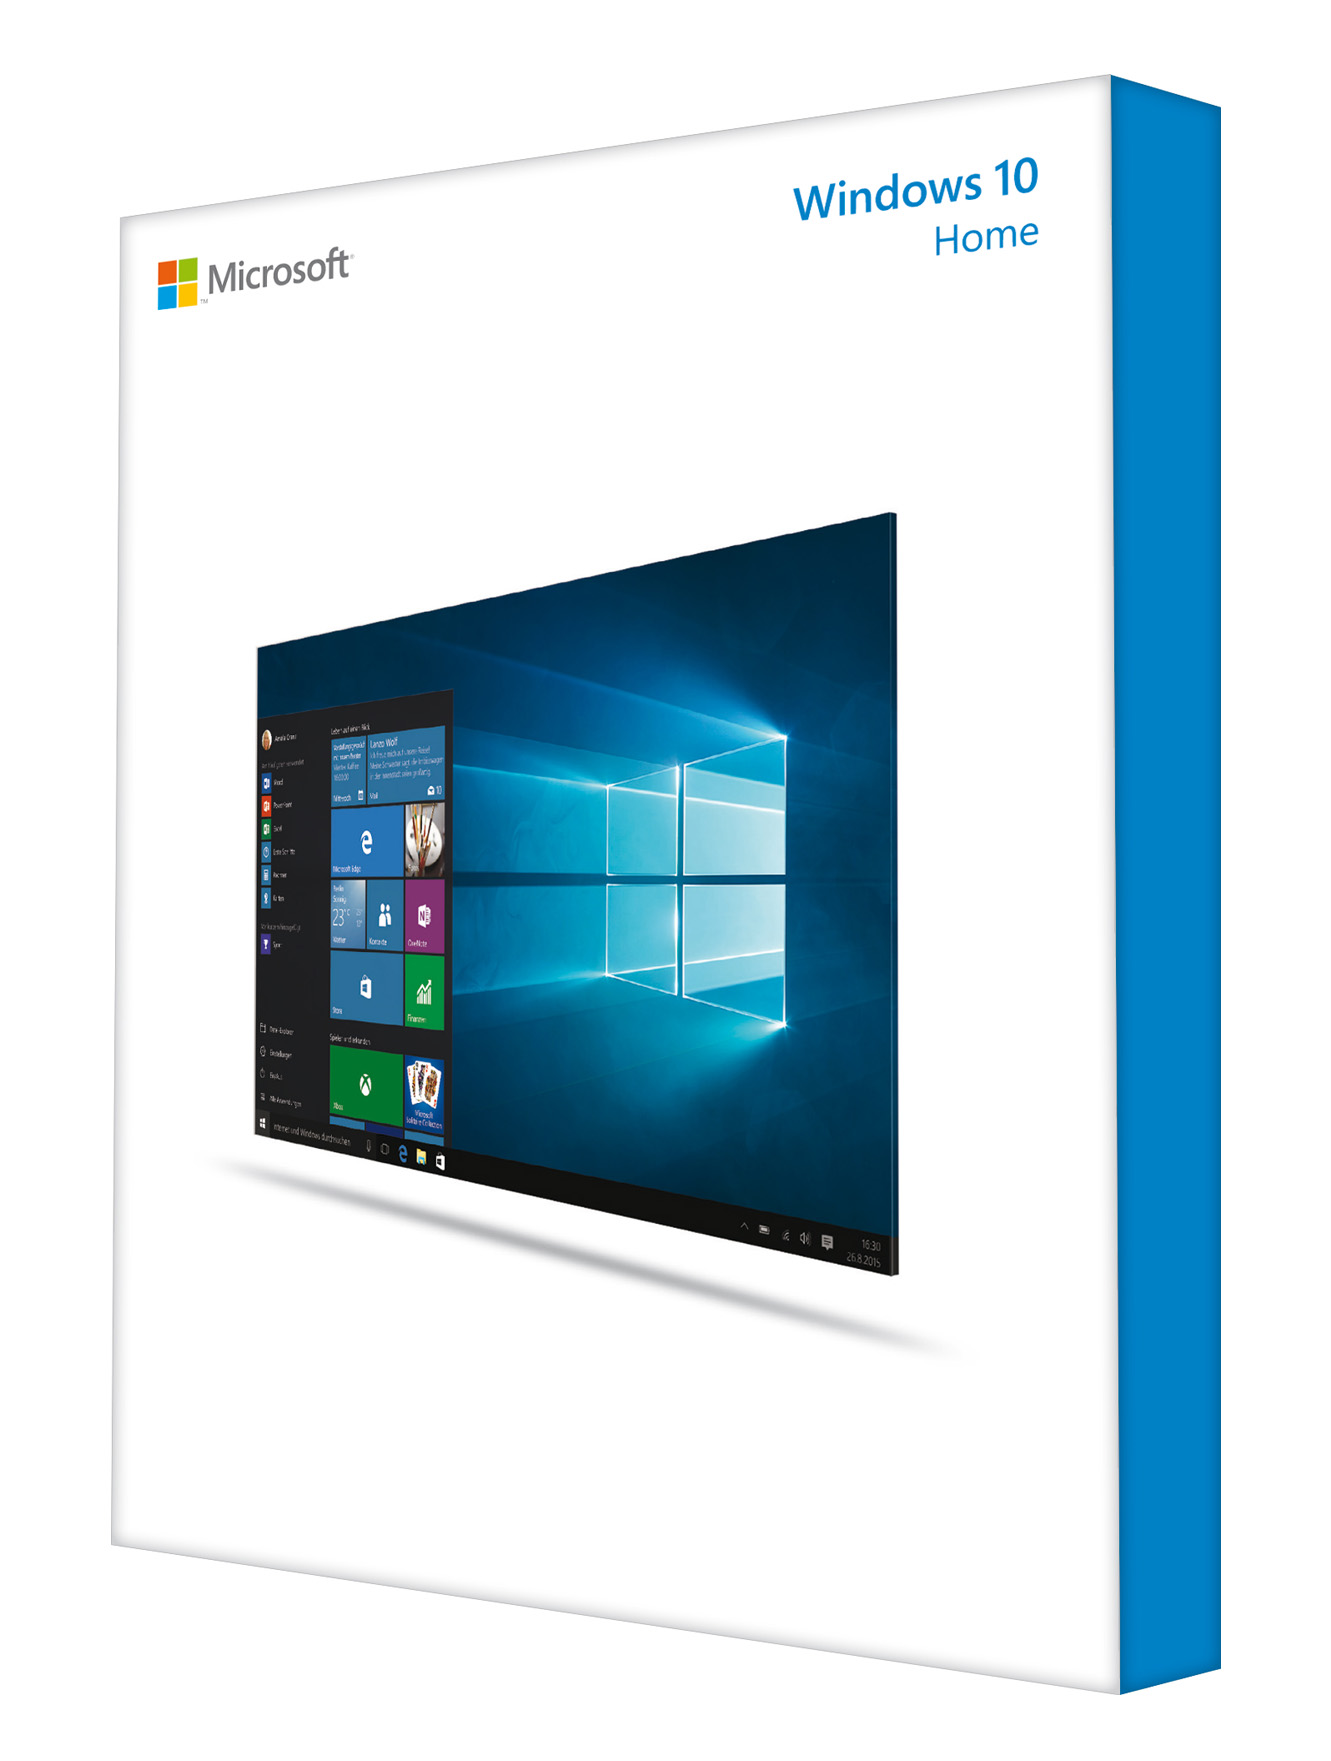 Microsoft verlängert Support für Windows 7 und Windows 8.1 auf Skylake-CPUs